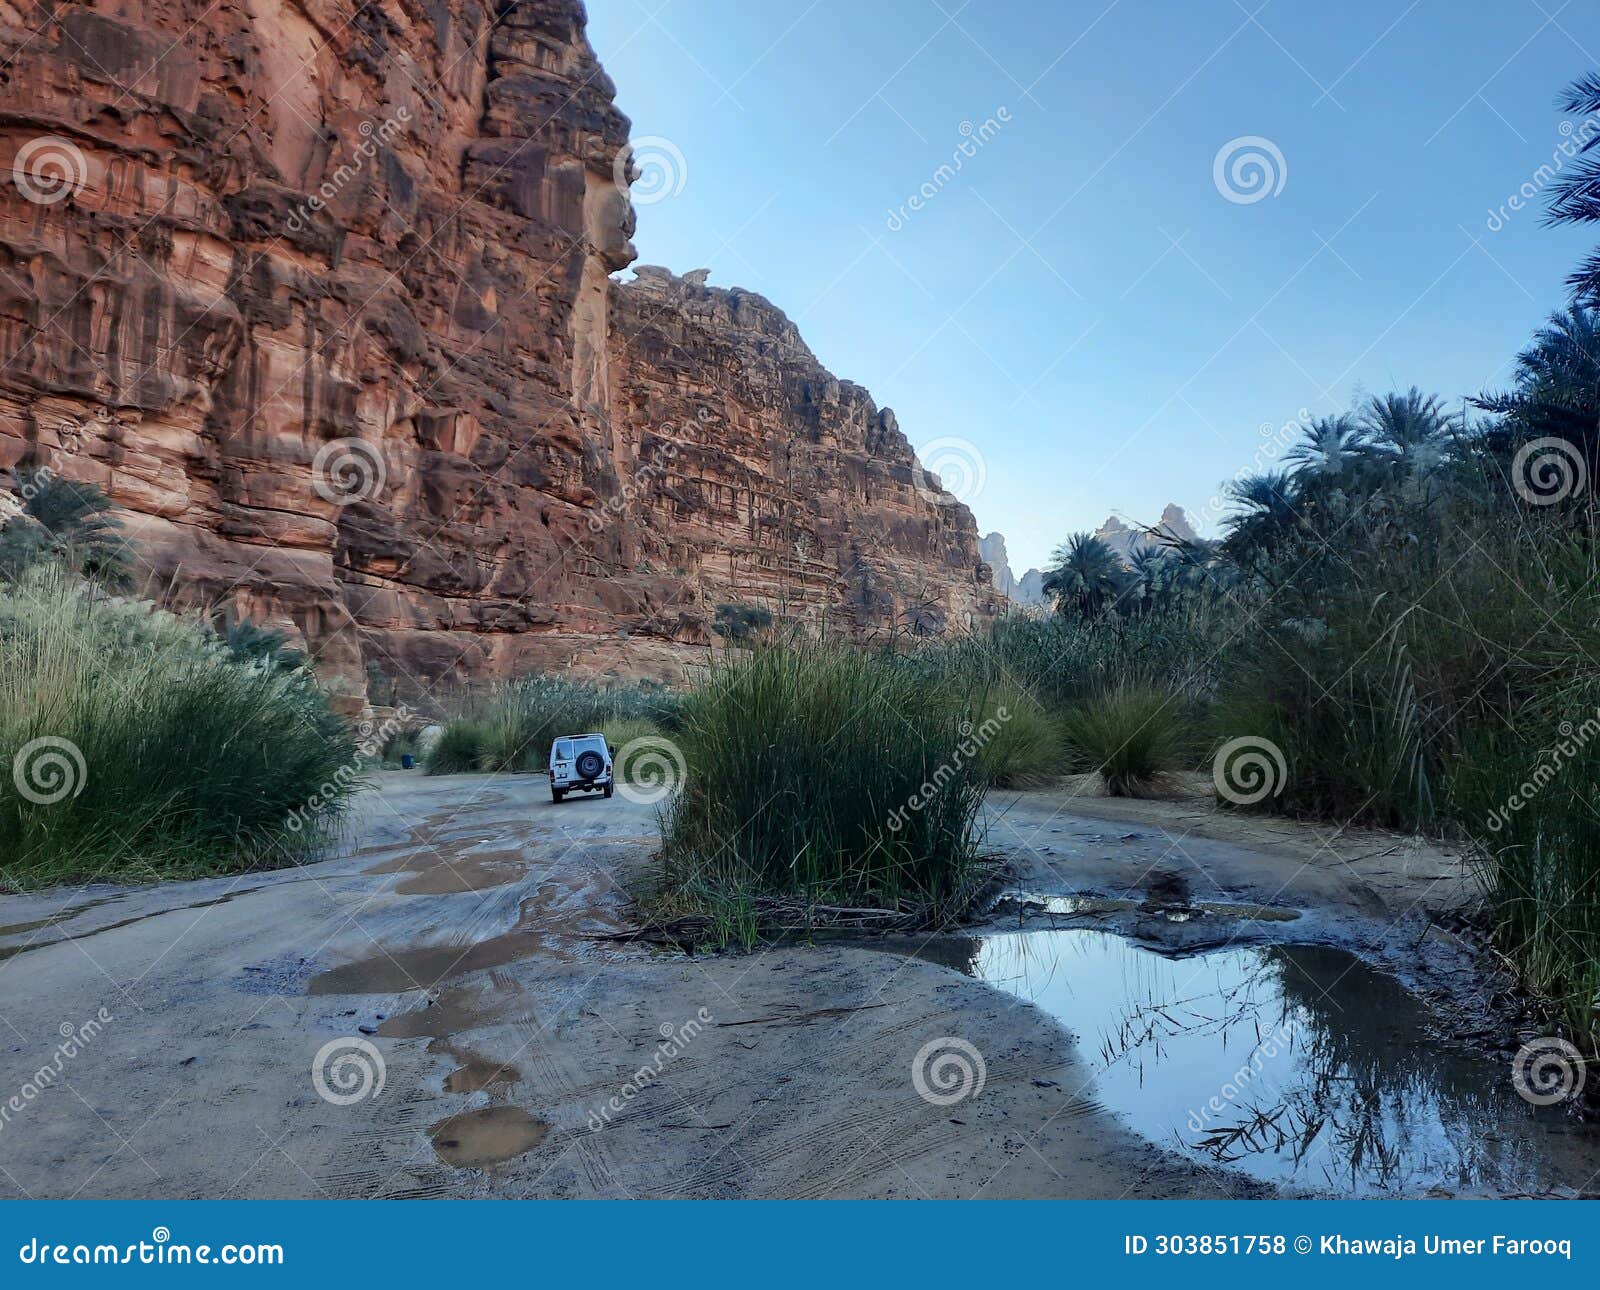 beautiful daytime view of wadi al disah in tabuk, saudi arabia.